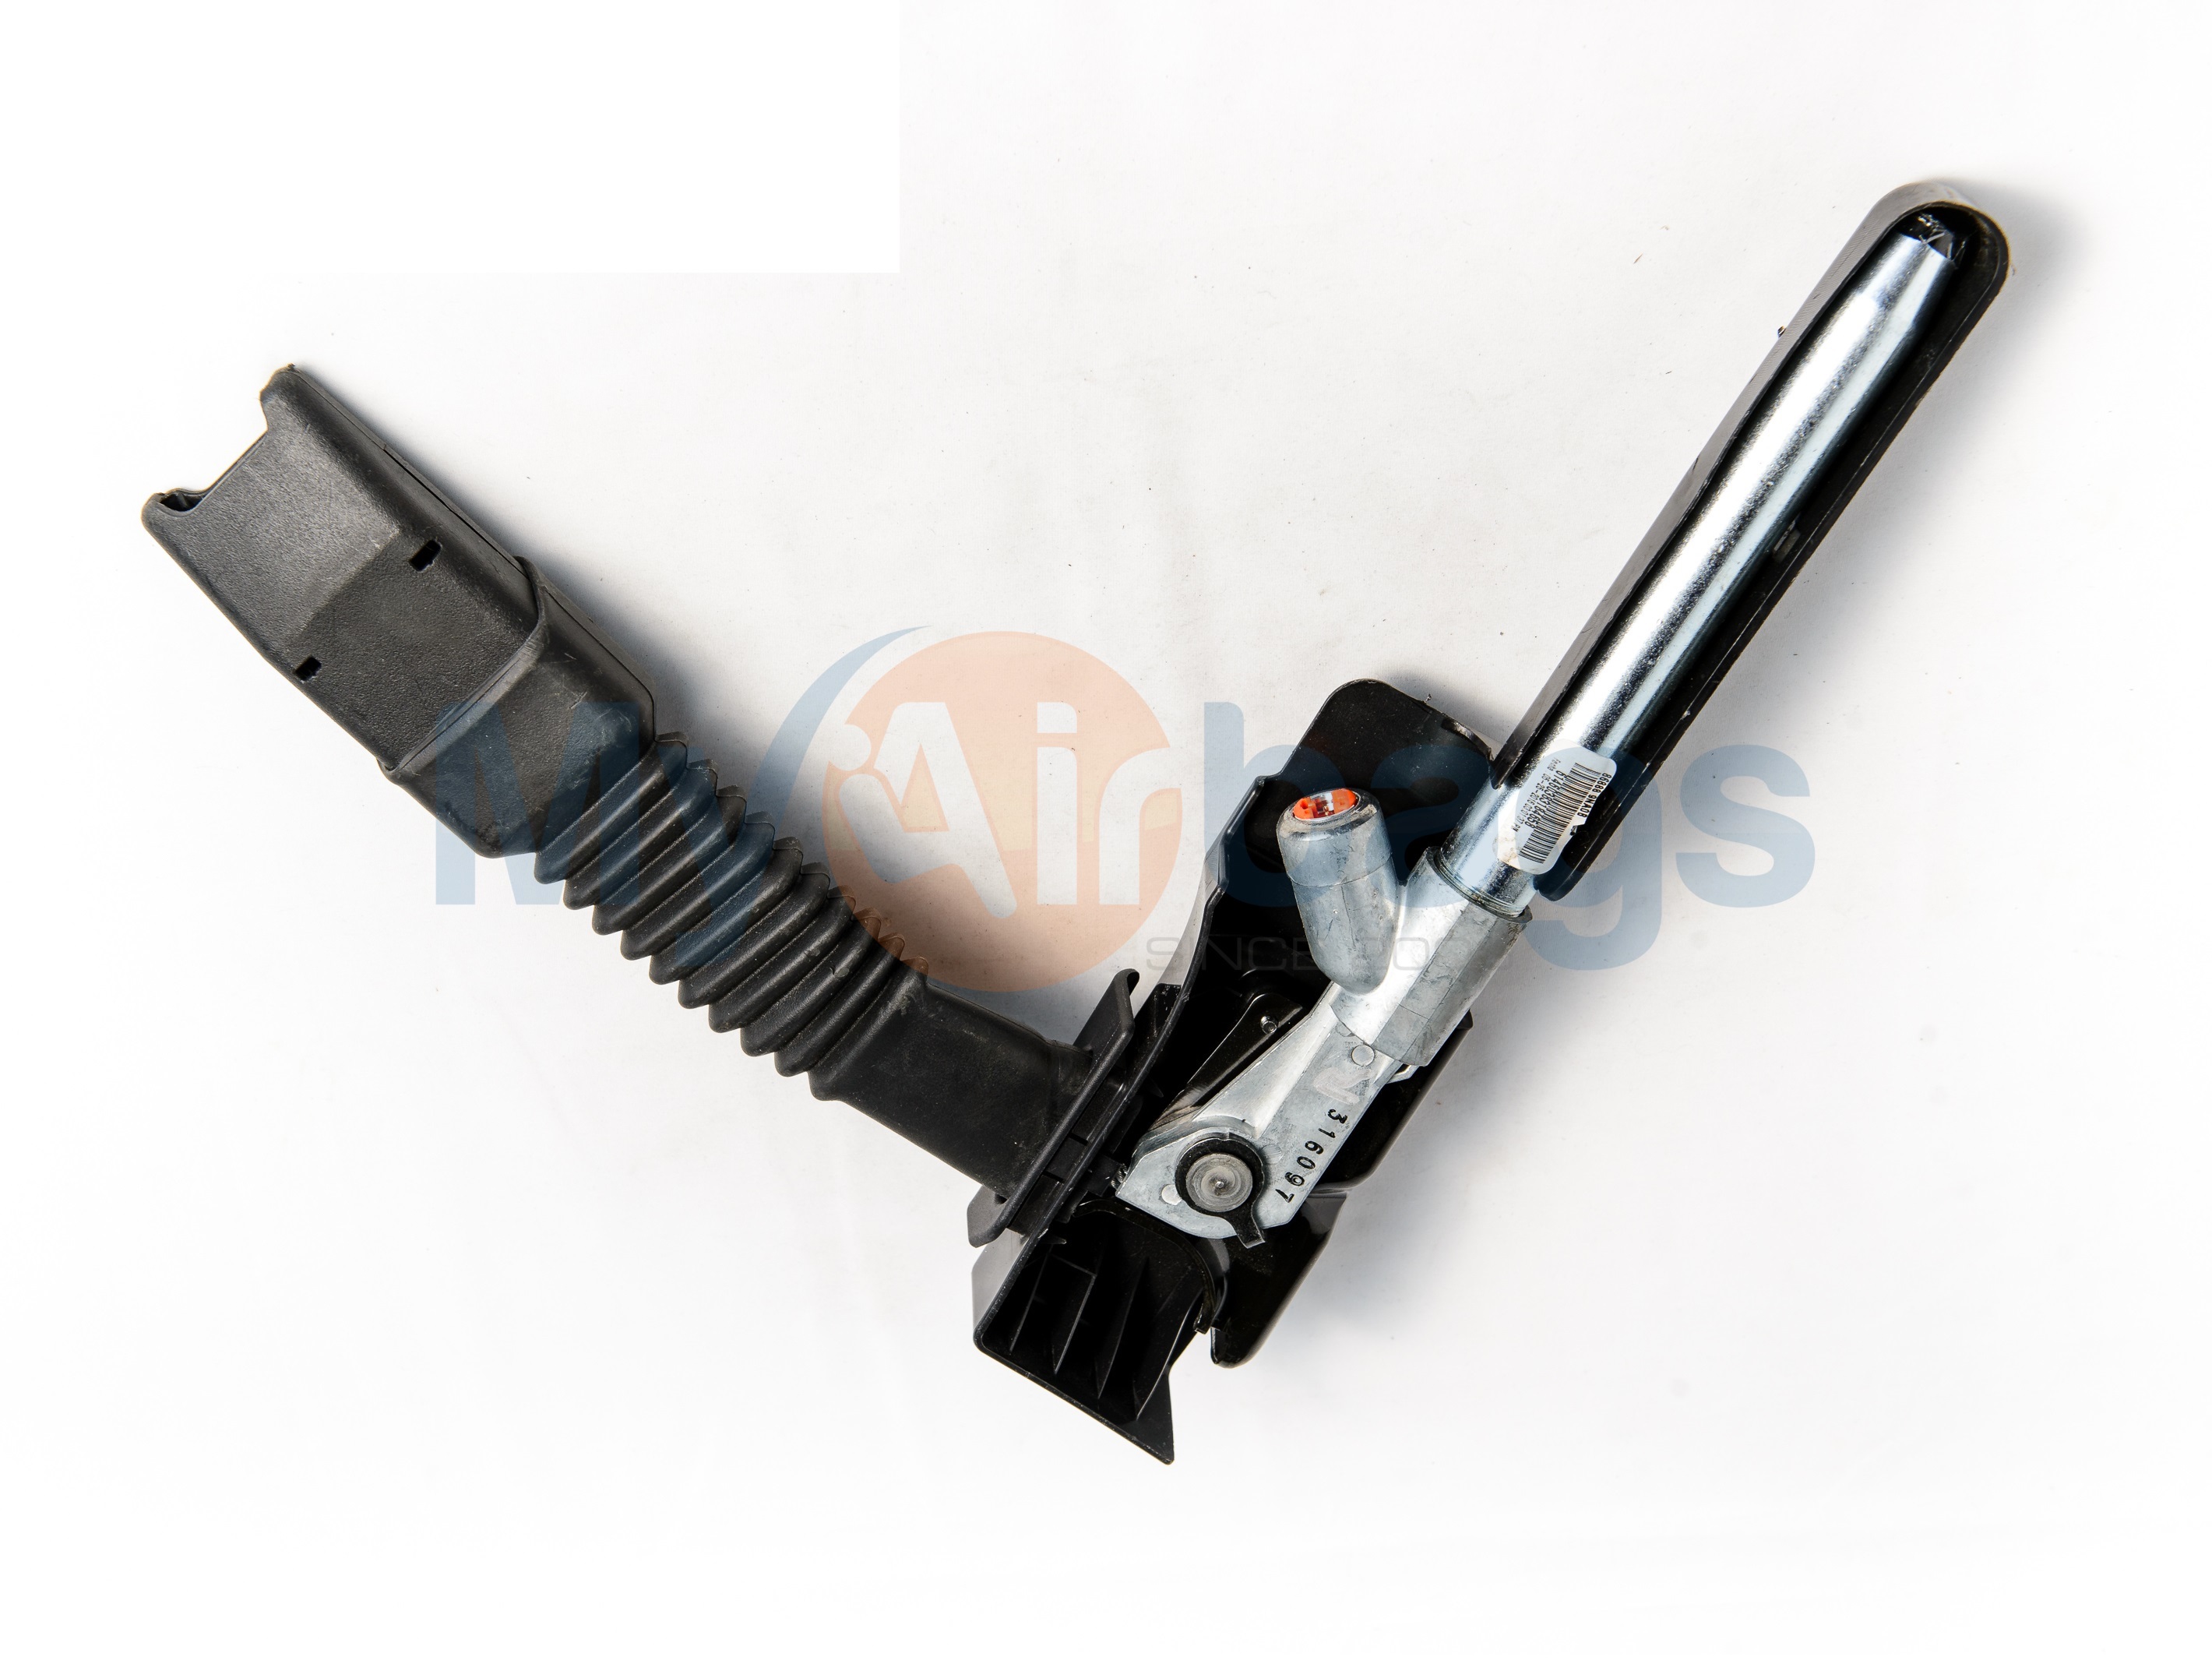 MyAirbags-Seat-Belt-Pretensioner-Repair-Replacment-26.jpg